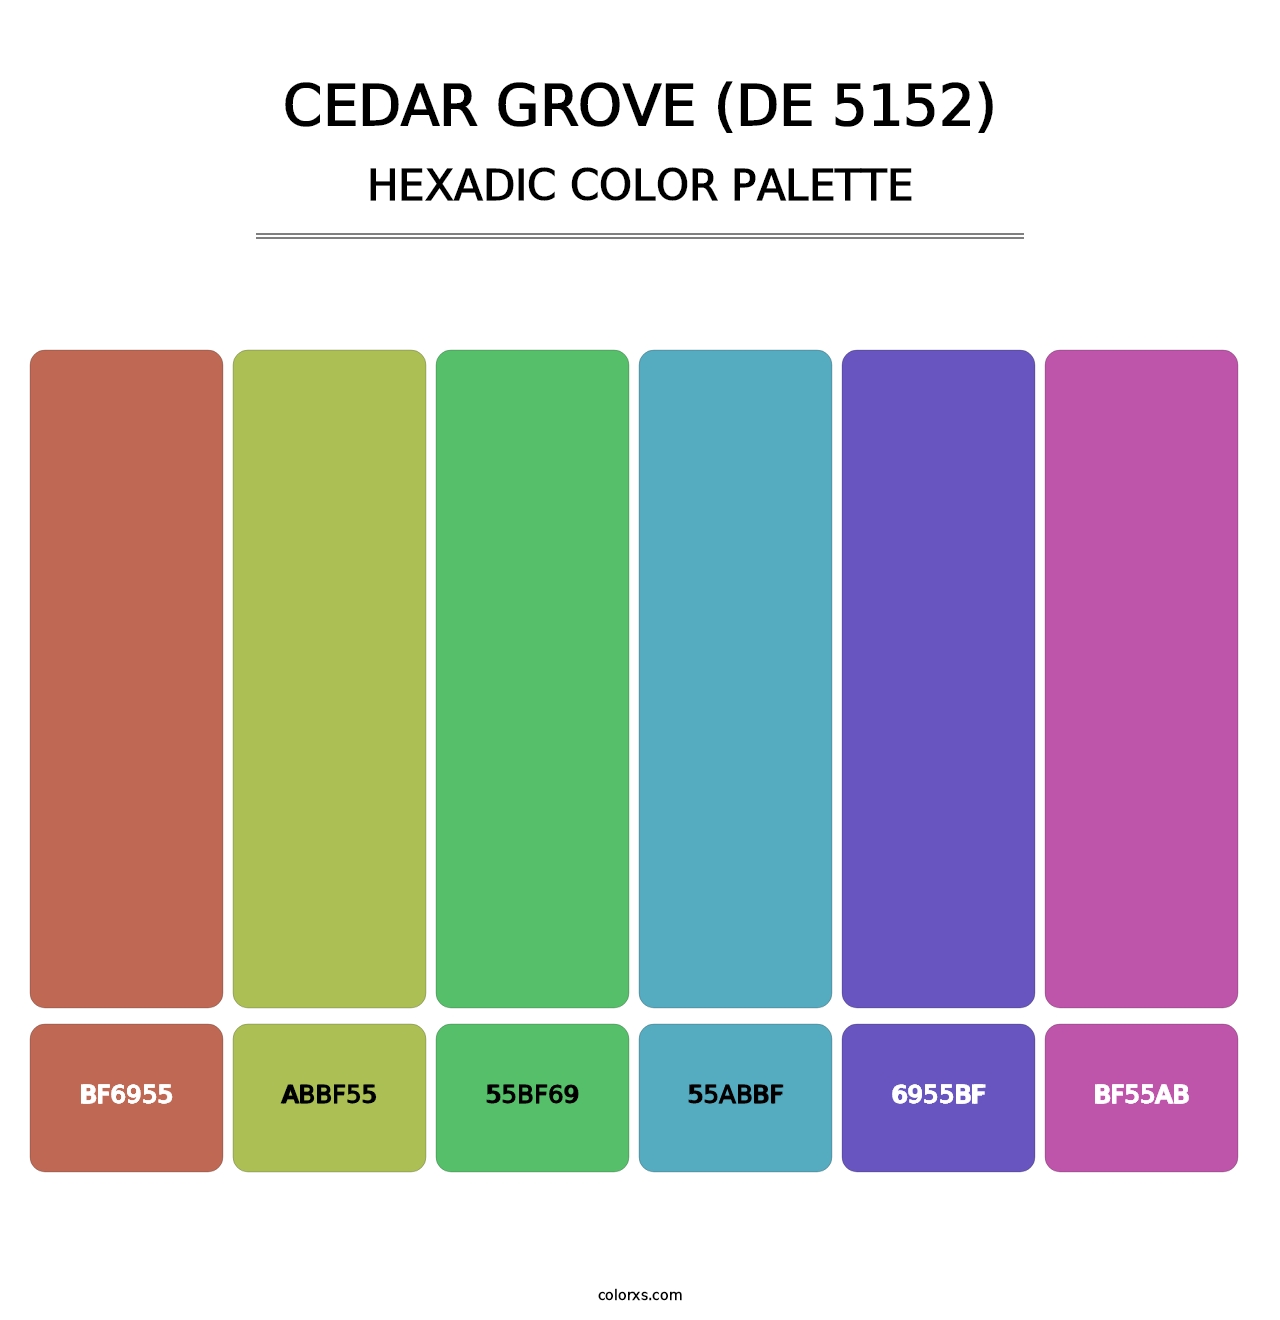 Cedar Grove (DE 5152) - Hexadic Color Palette